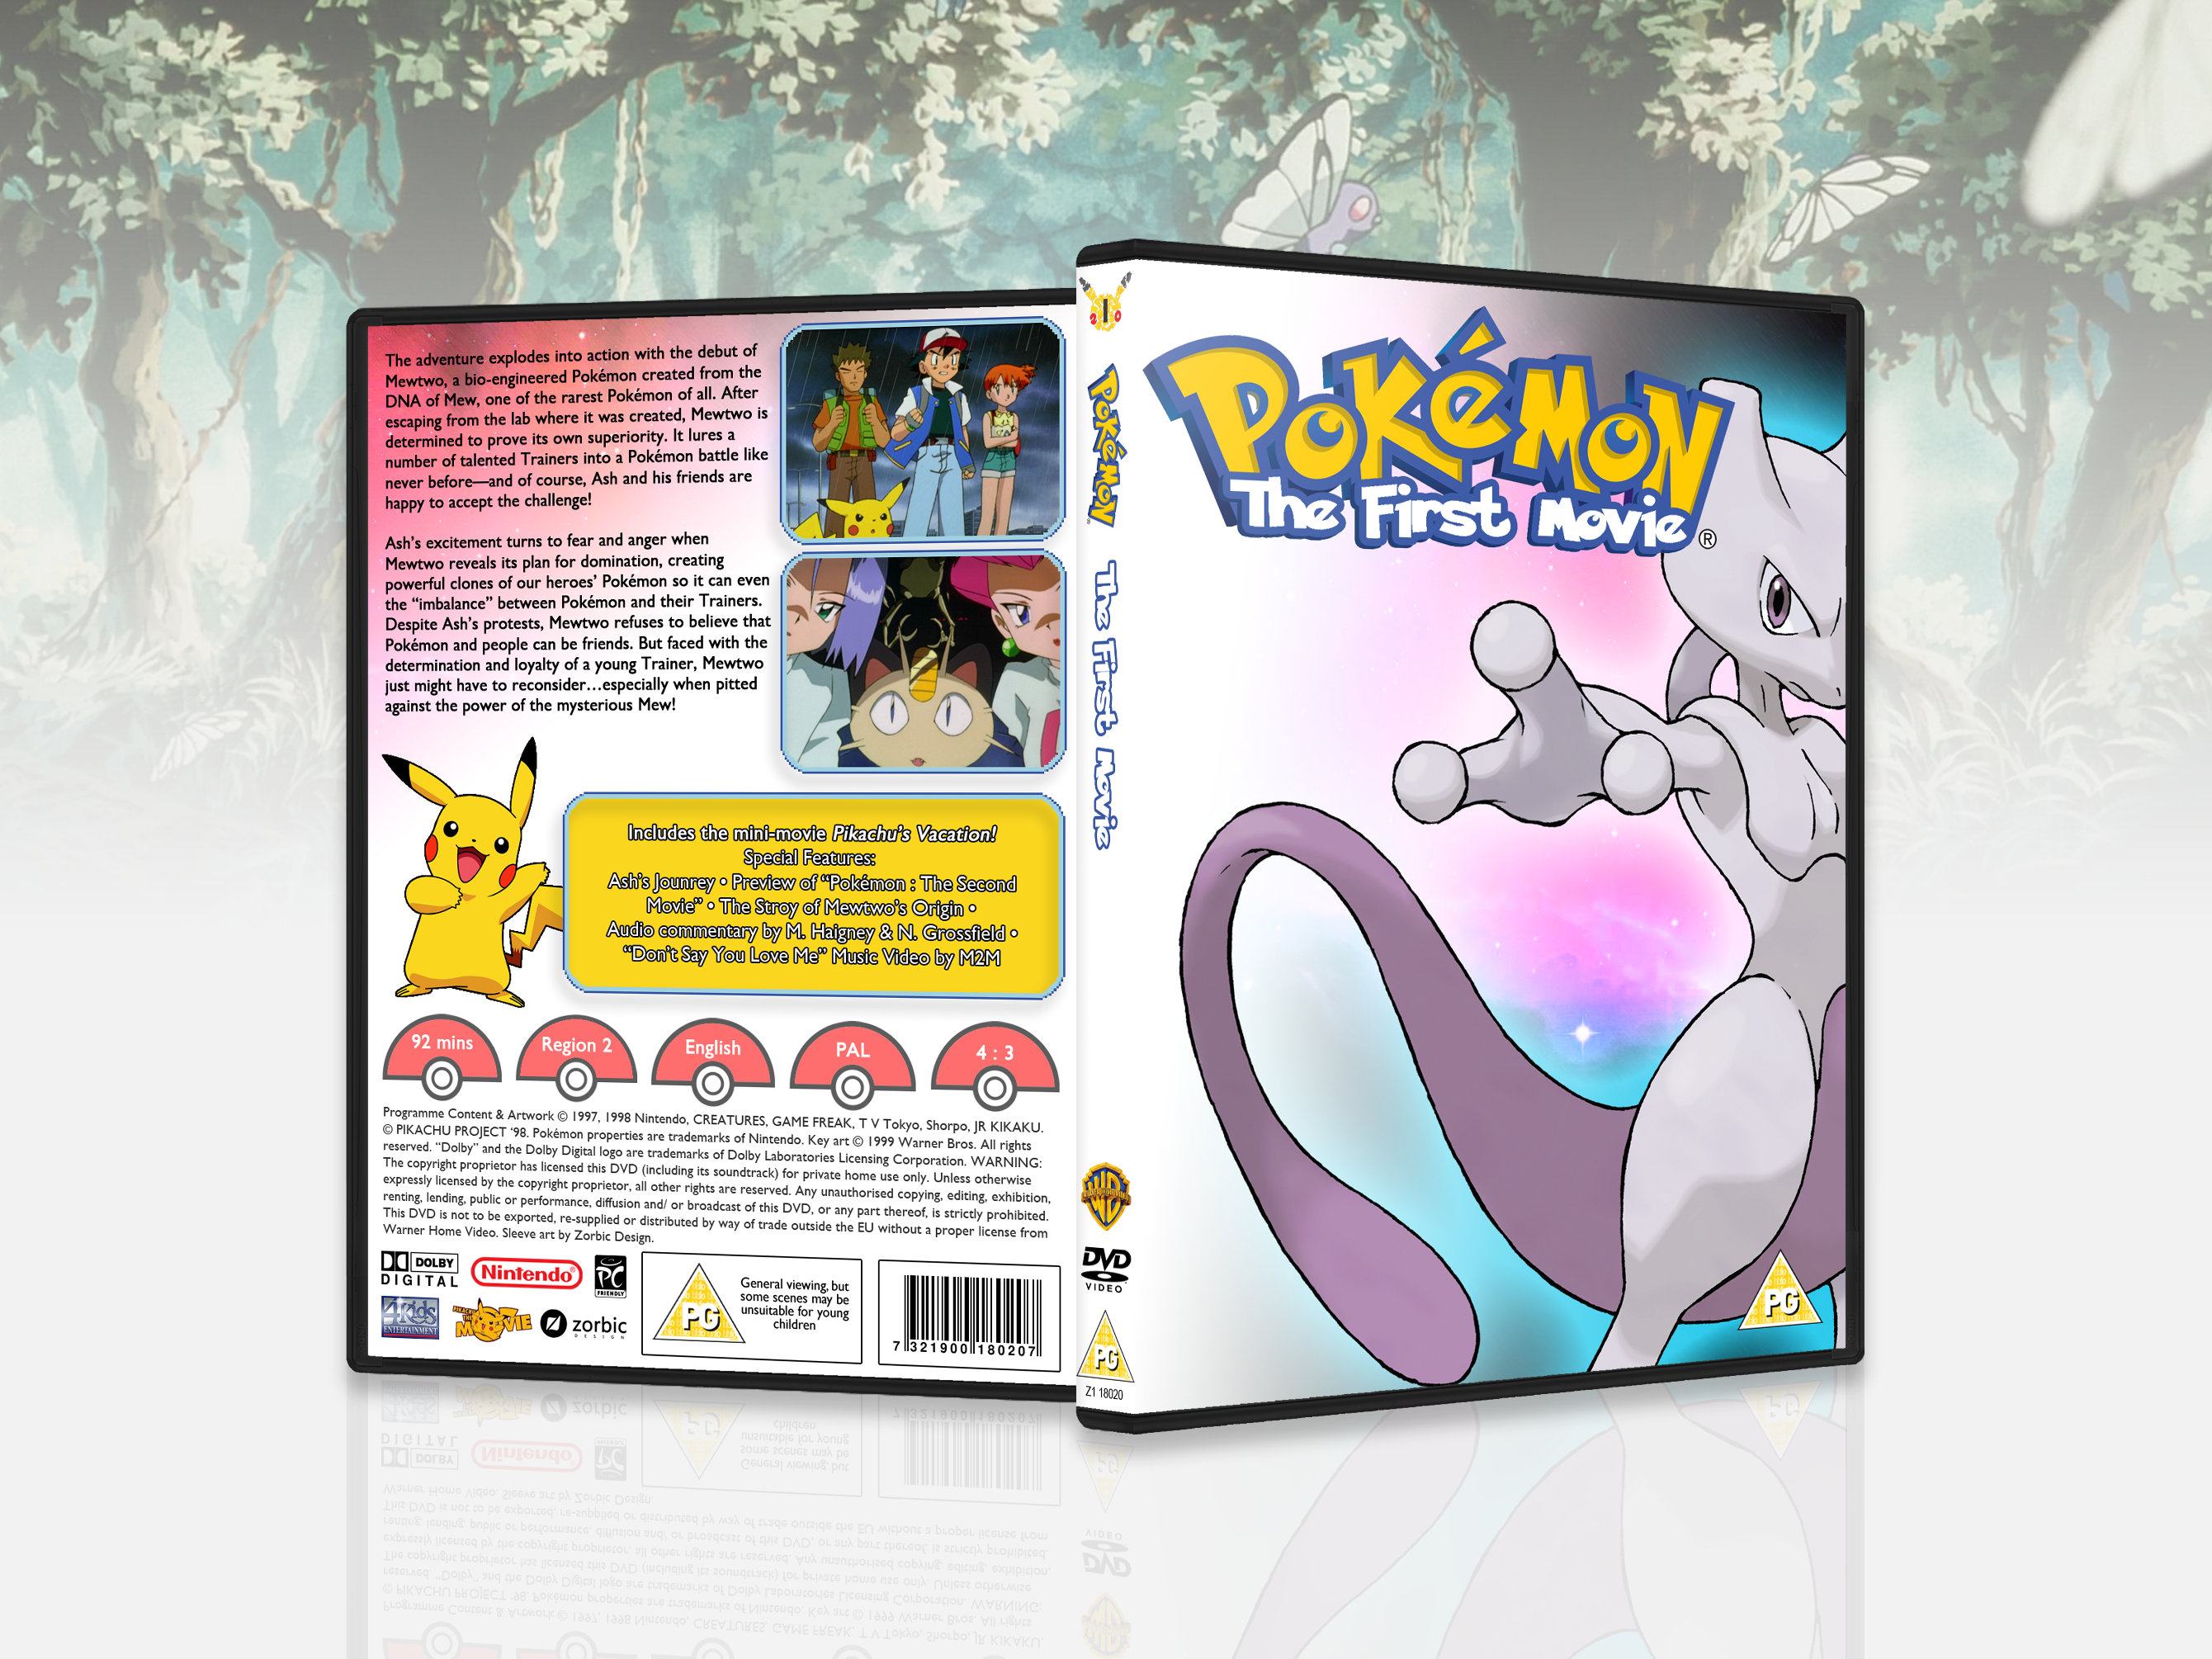 Pokémon: The First Movie box cover